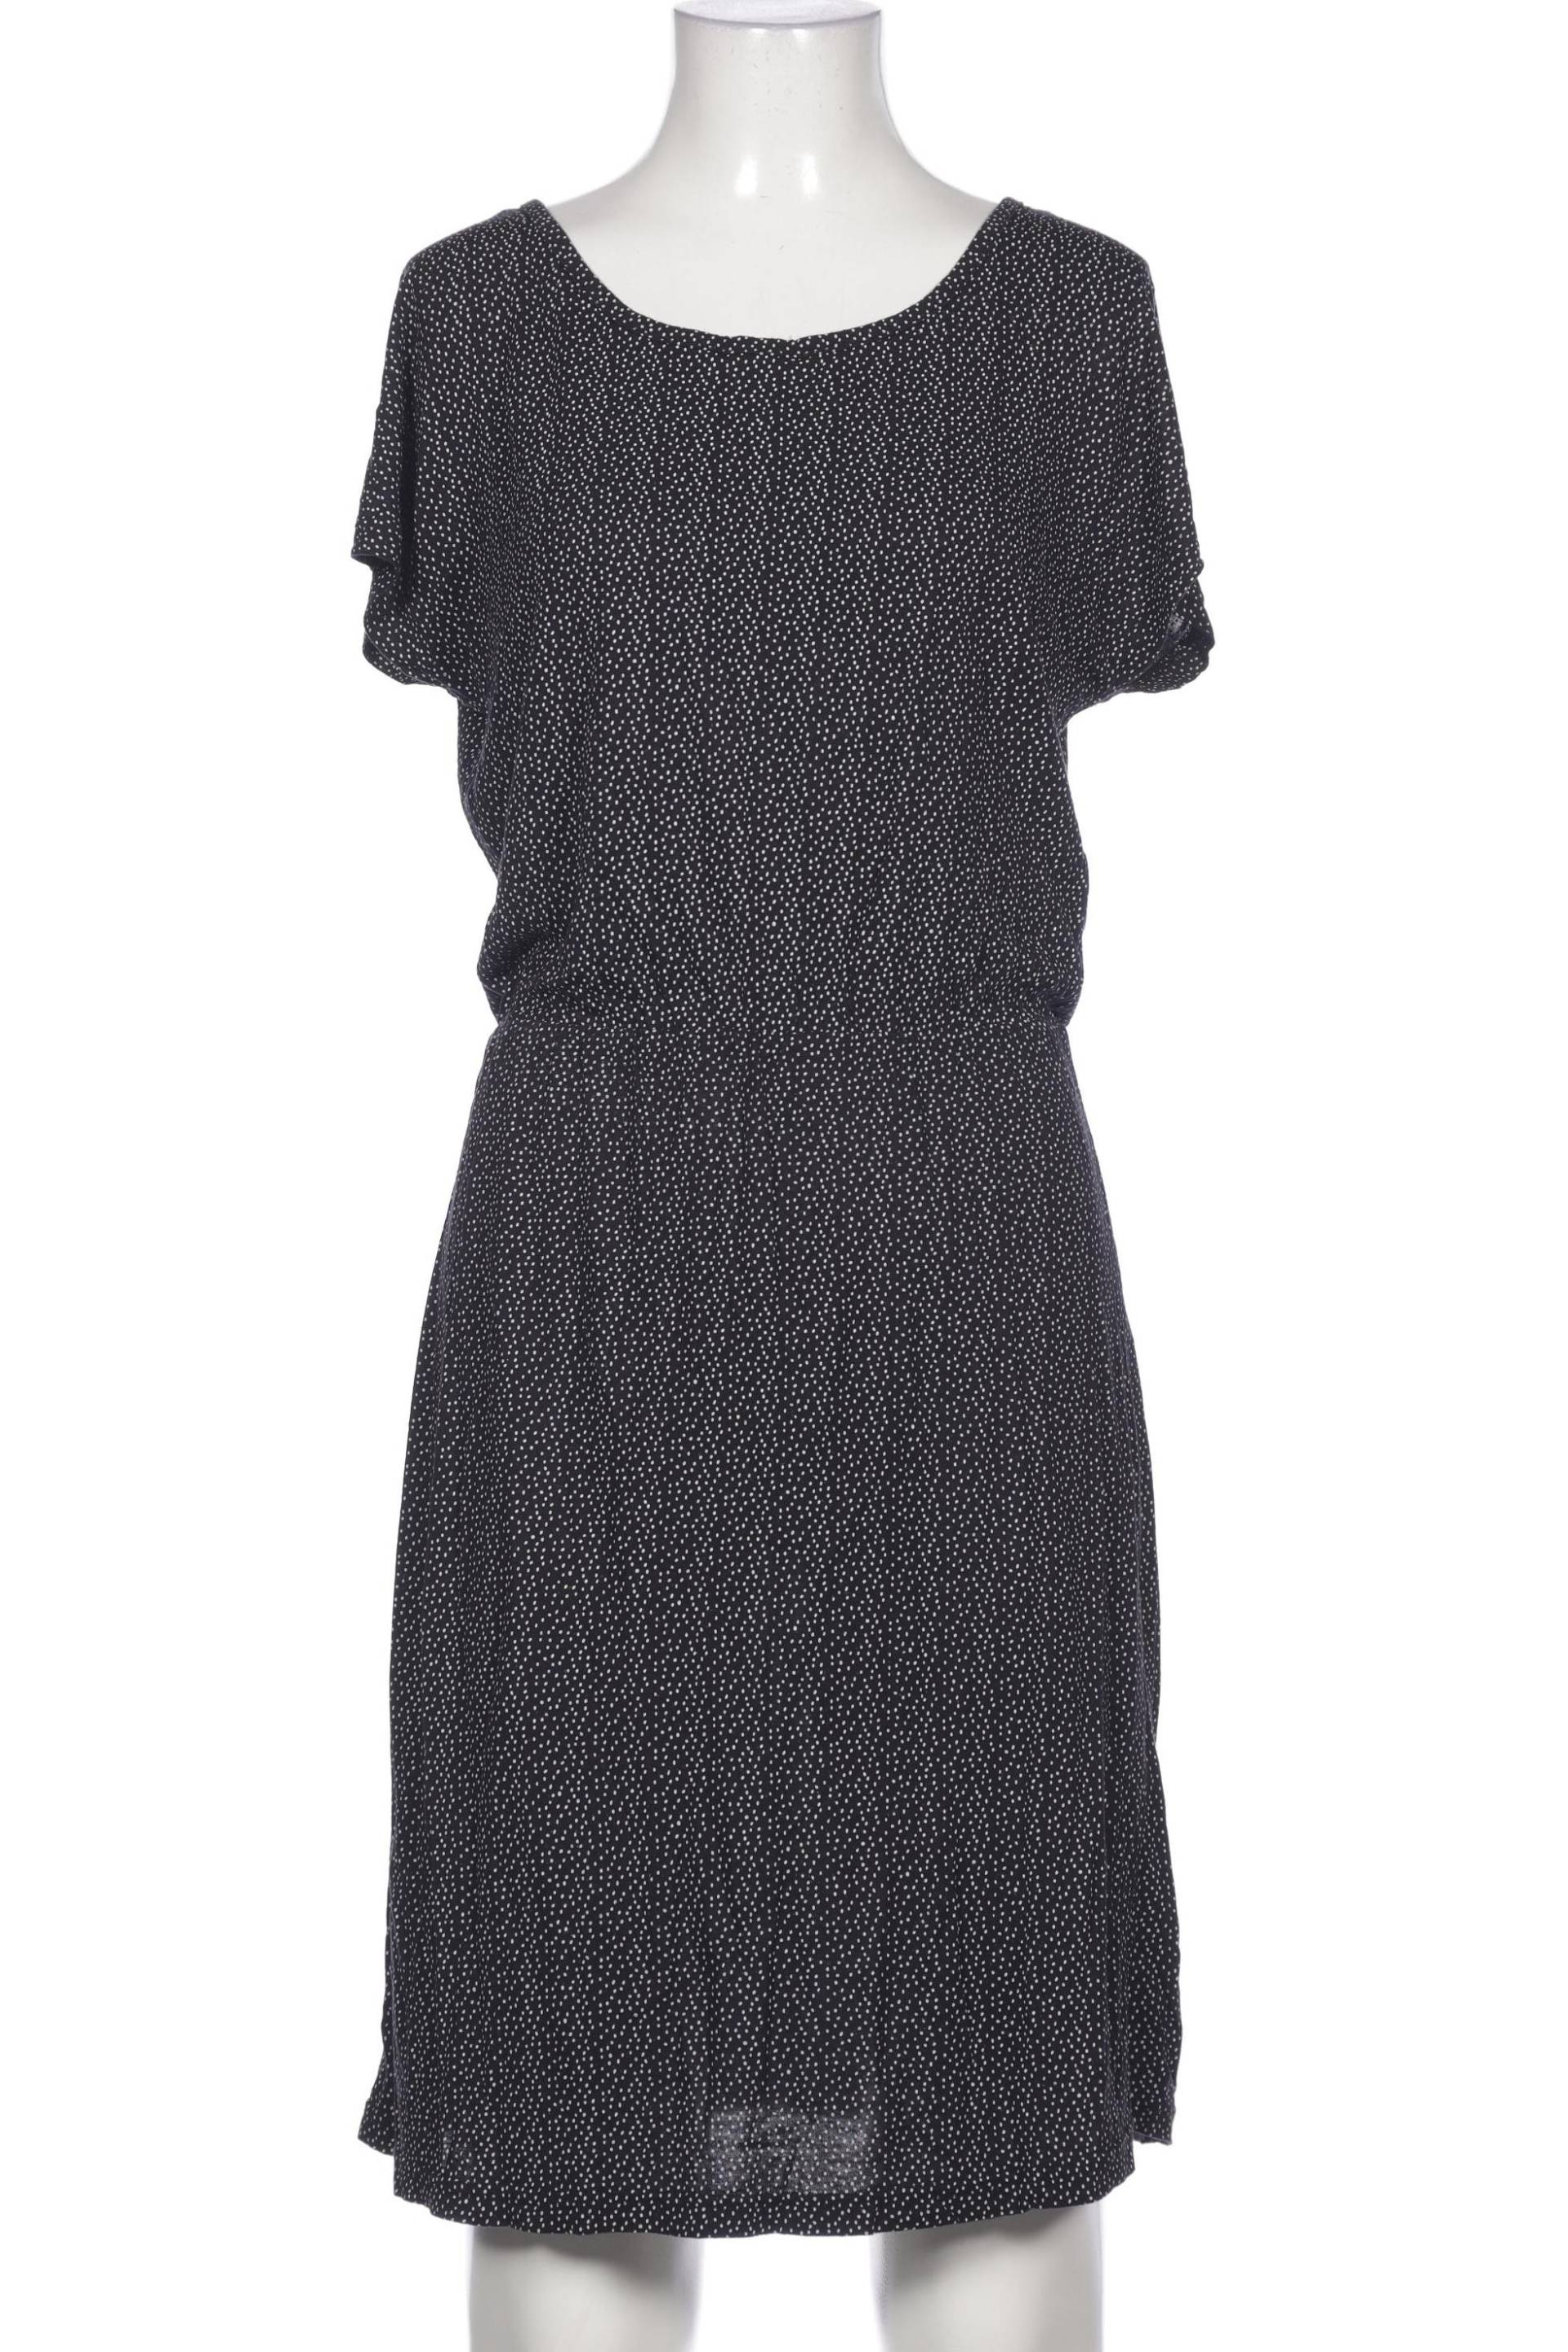 OBJECT Damen Kleid, schwarz von Object